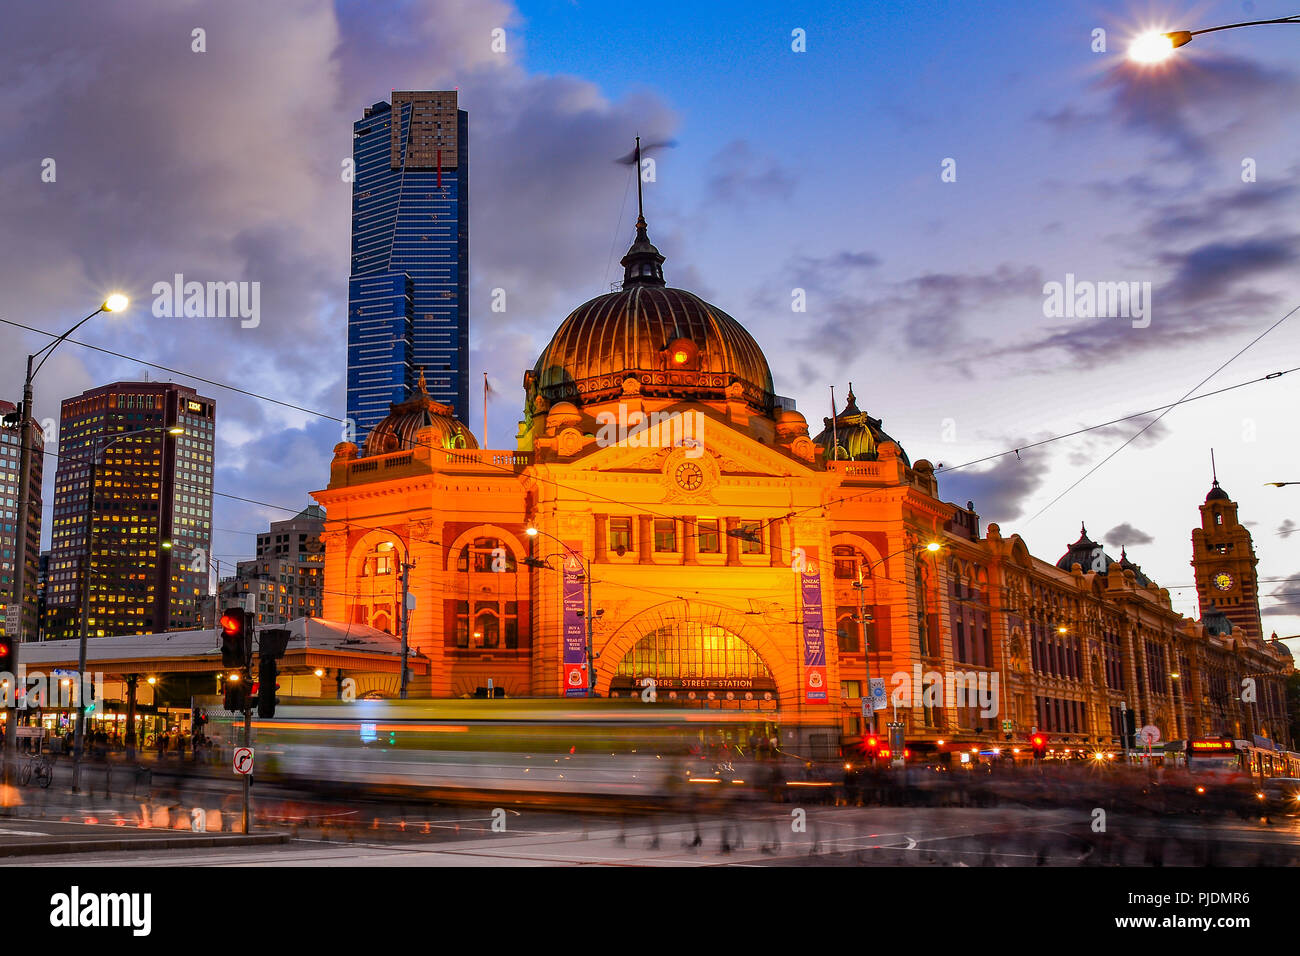 La estación de Flinders Street en la noche, el monumento más famoso de Melbourne Foto de stock